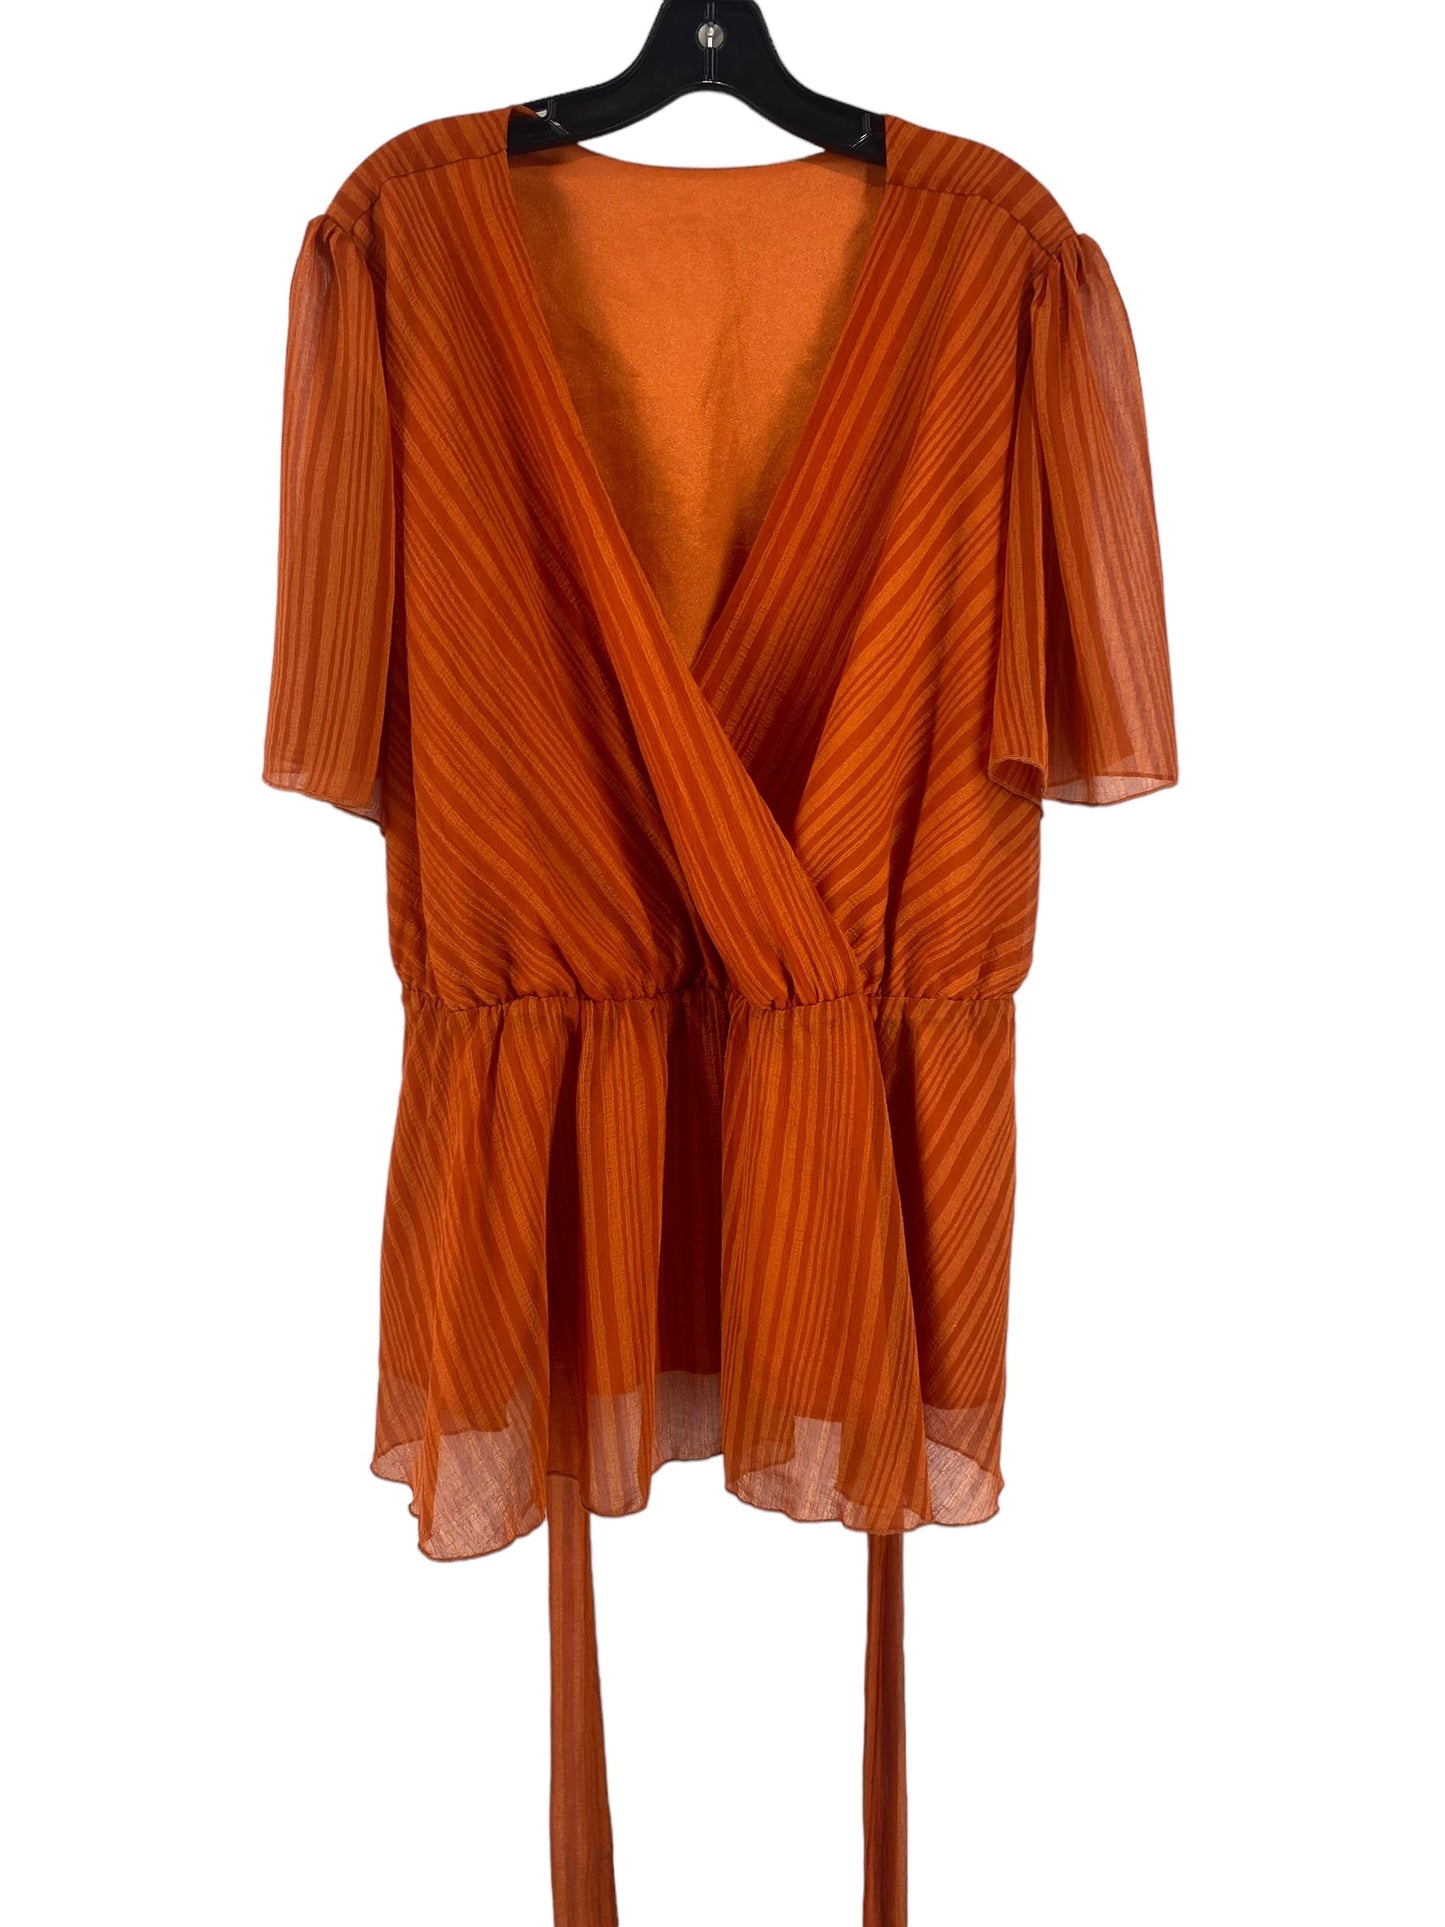 Orange Top Short Sleeve Shein, Size 4x